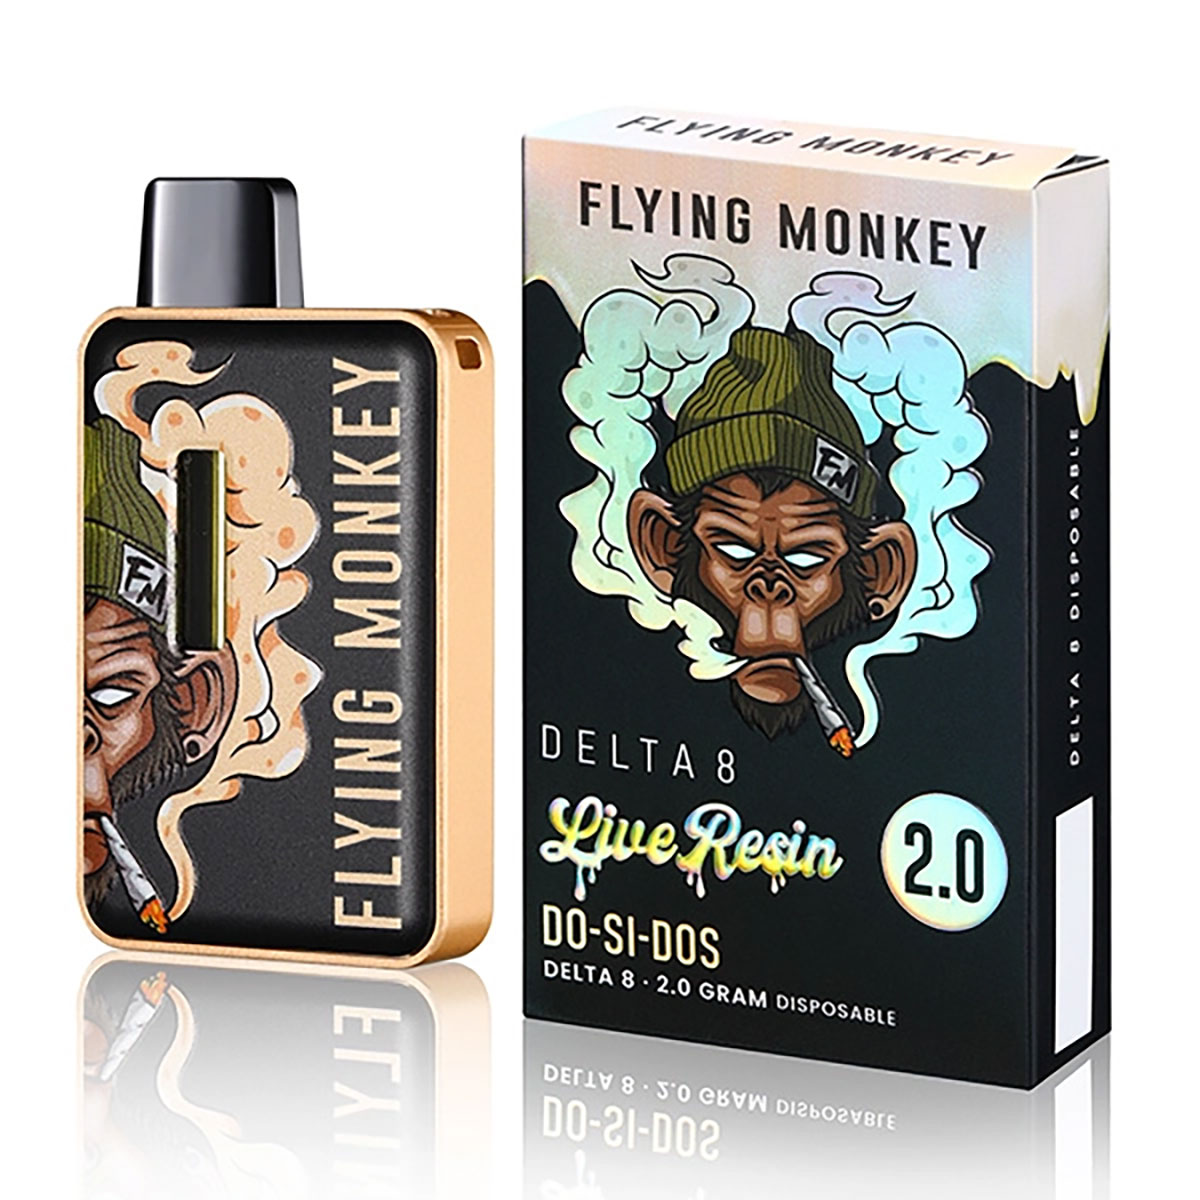 Flying Monkey Live Resin D8 Disposable Vape - Do Si Dos 2G